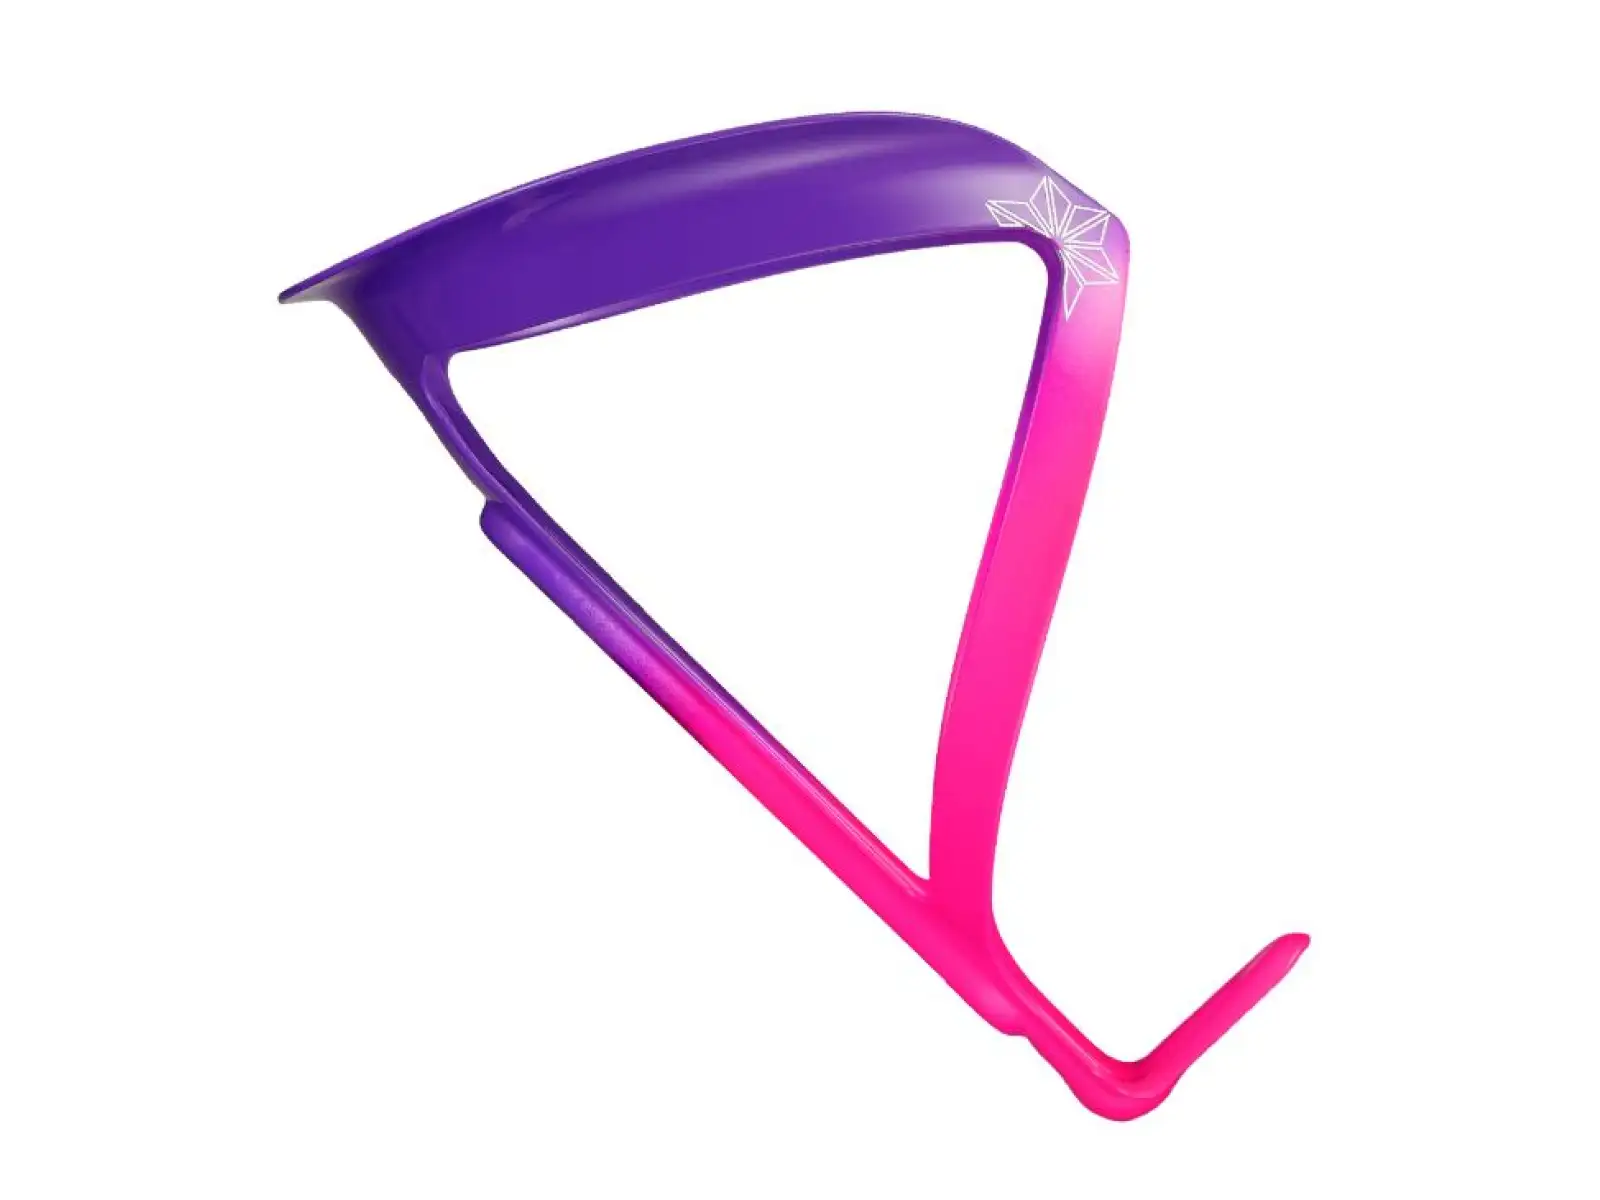 Supacaz Fly Cage Limited Aluminium košík na láhev Neon pink / Neon purple